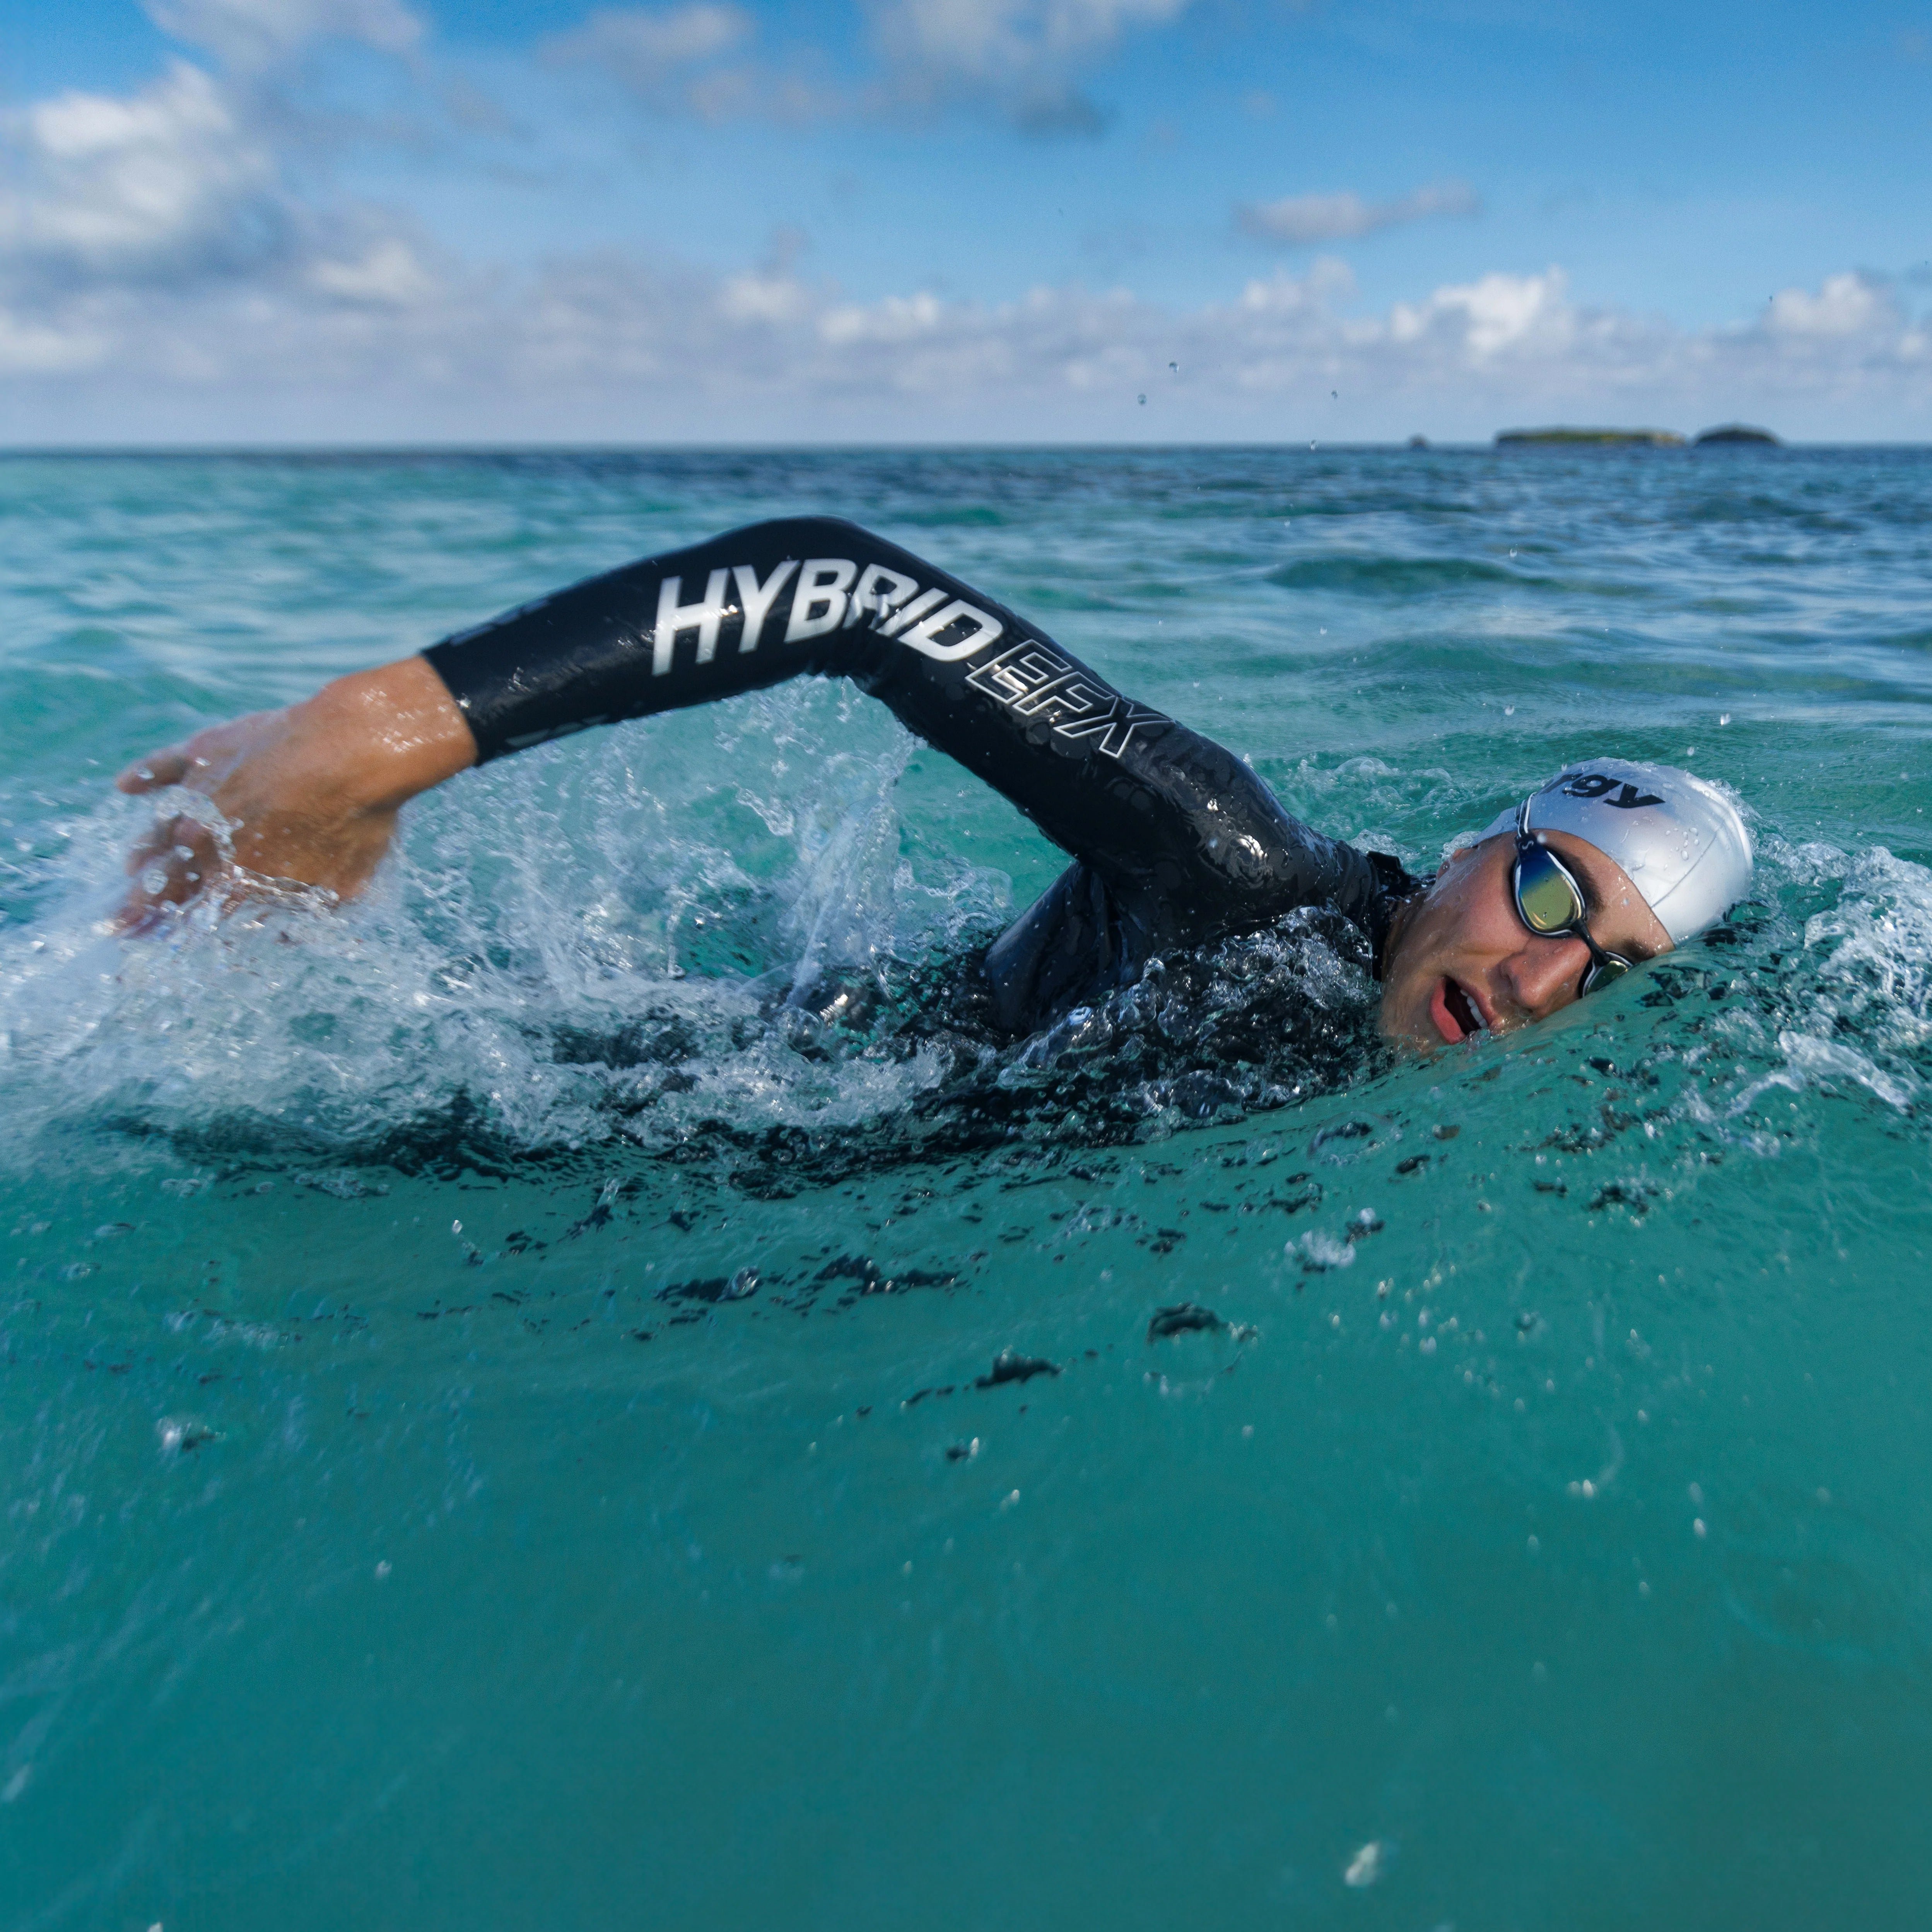 Hybrid EFX - Worlds Fastest Triathlon Wetsuit